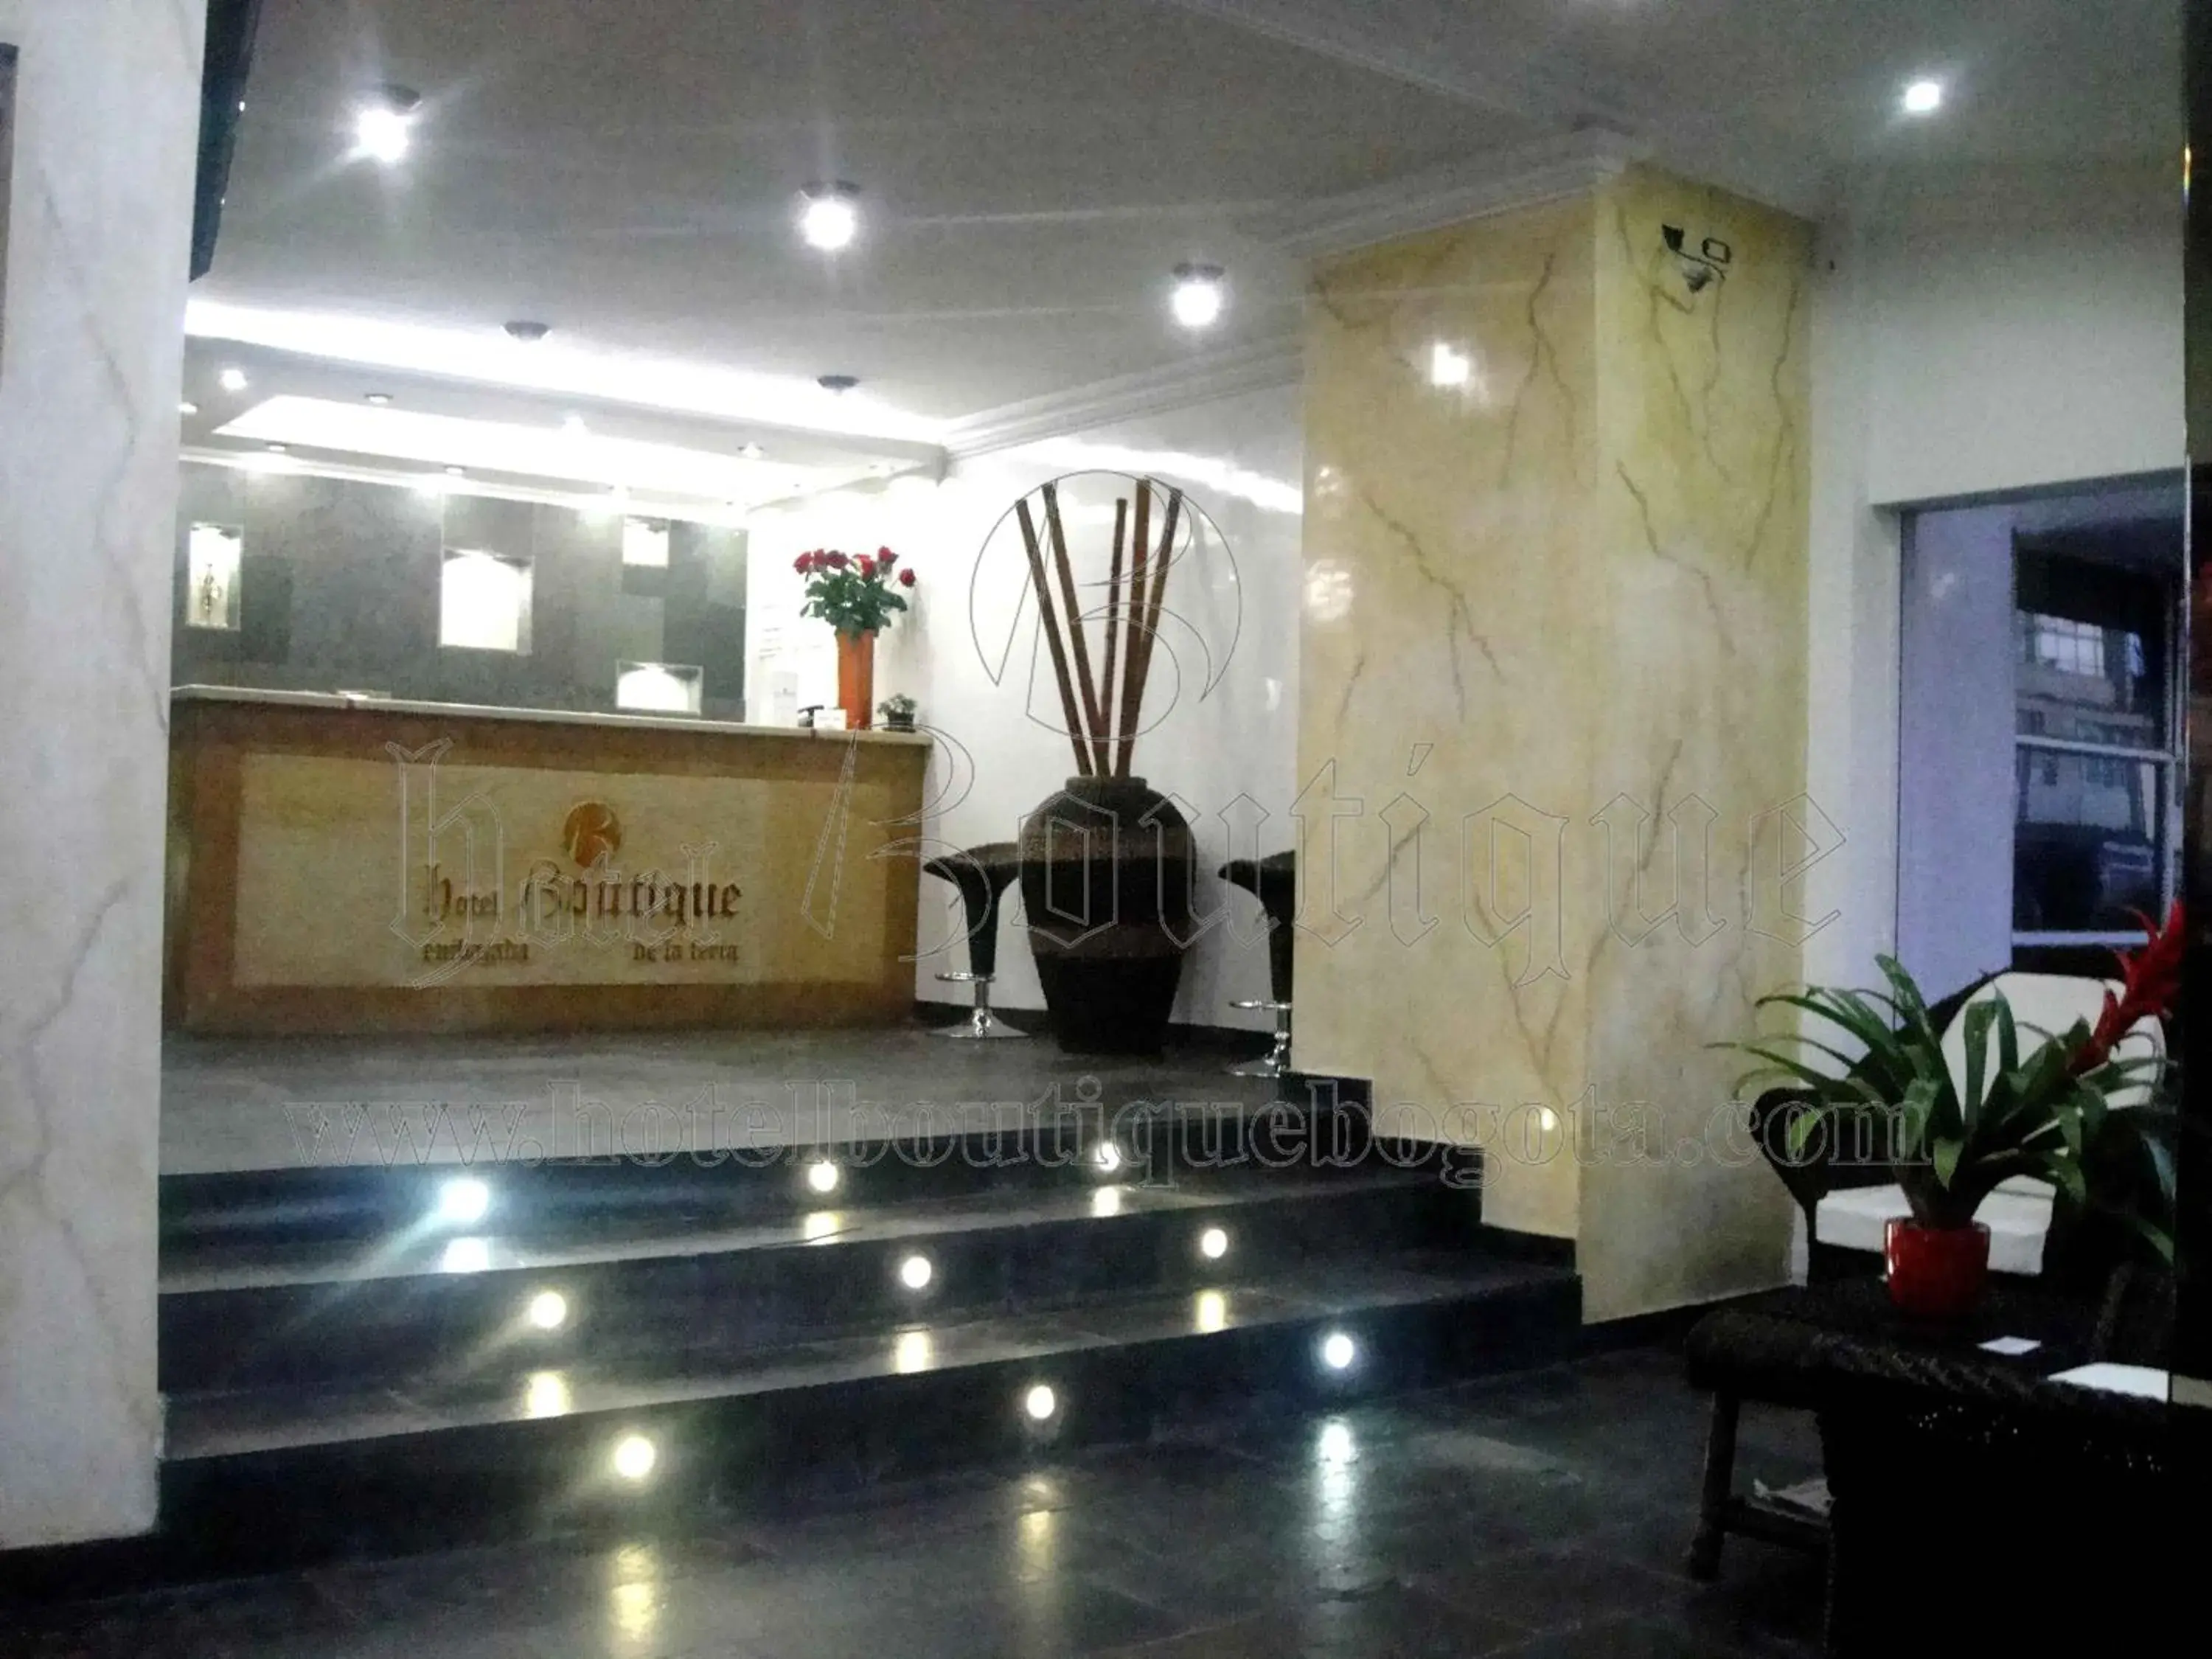 Lobby/Reception in Hotel Boutique Embajada de la Feria